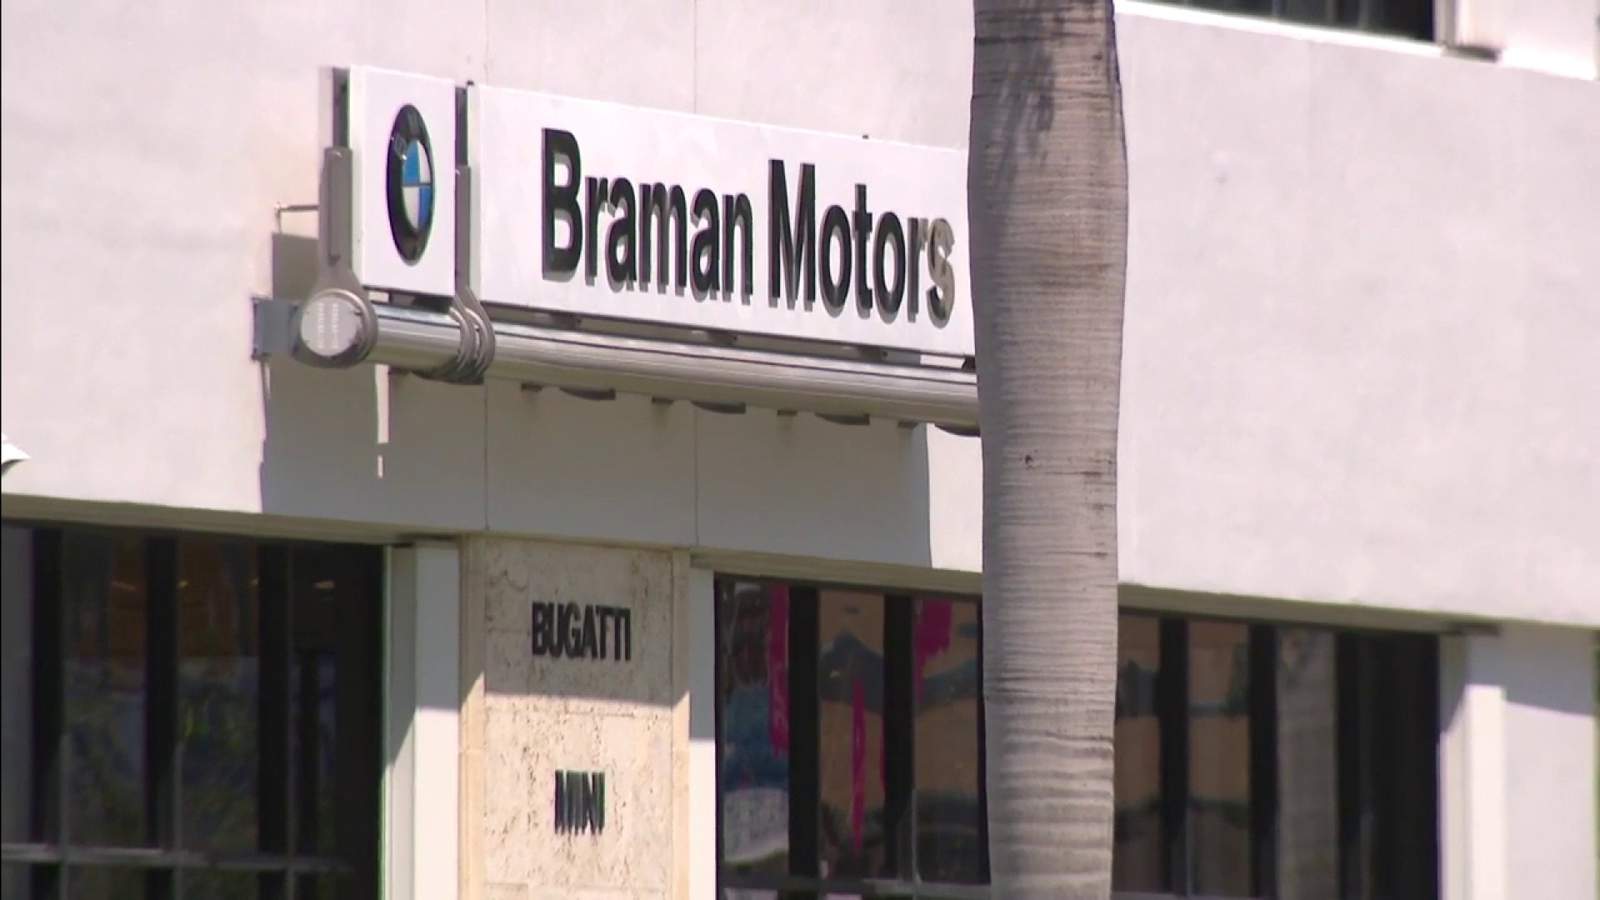 Was Braman Motors target of hackers demanding ransom money? Employee says it’s true